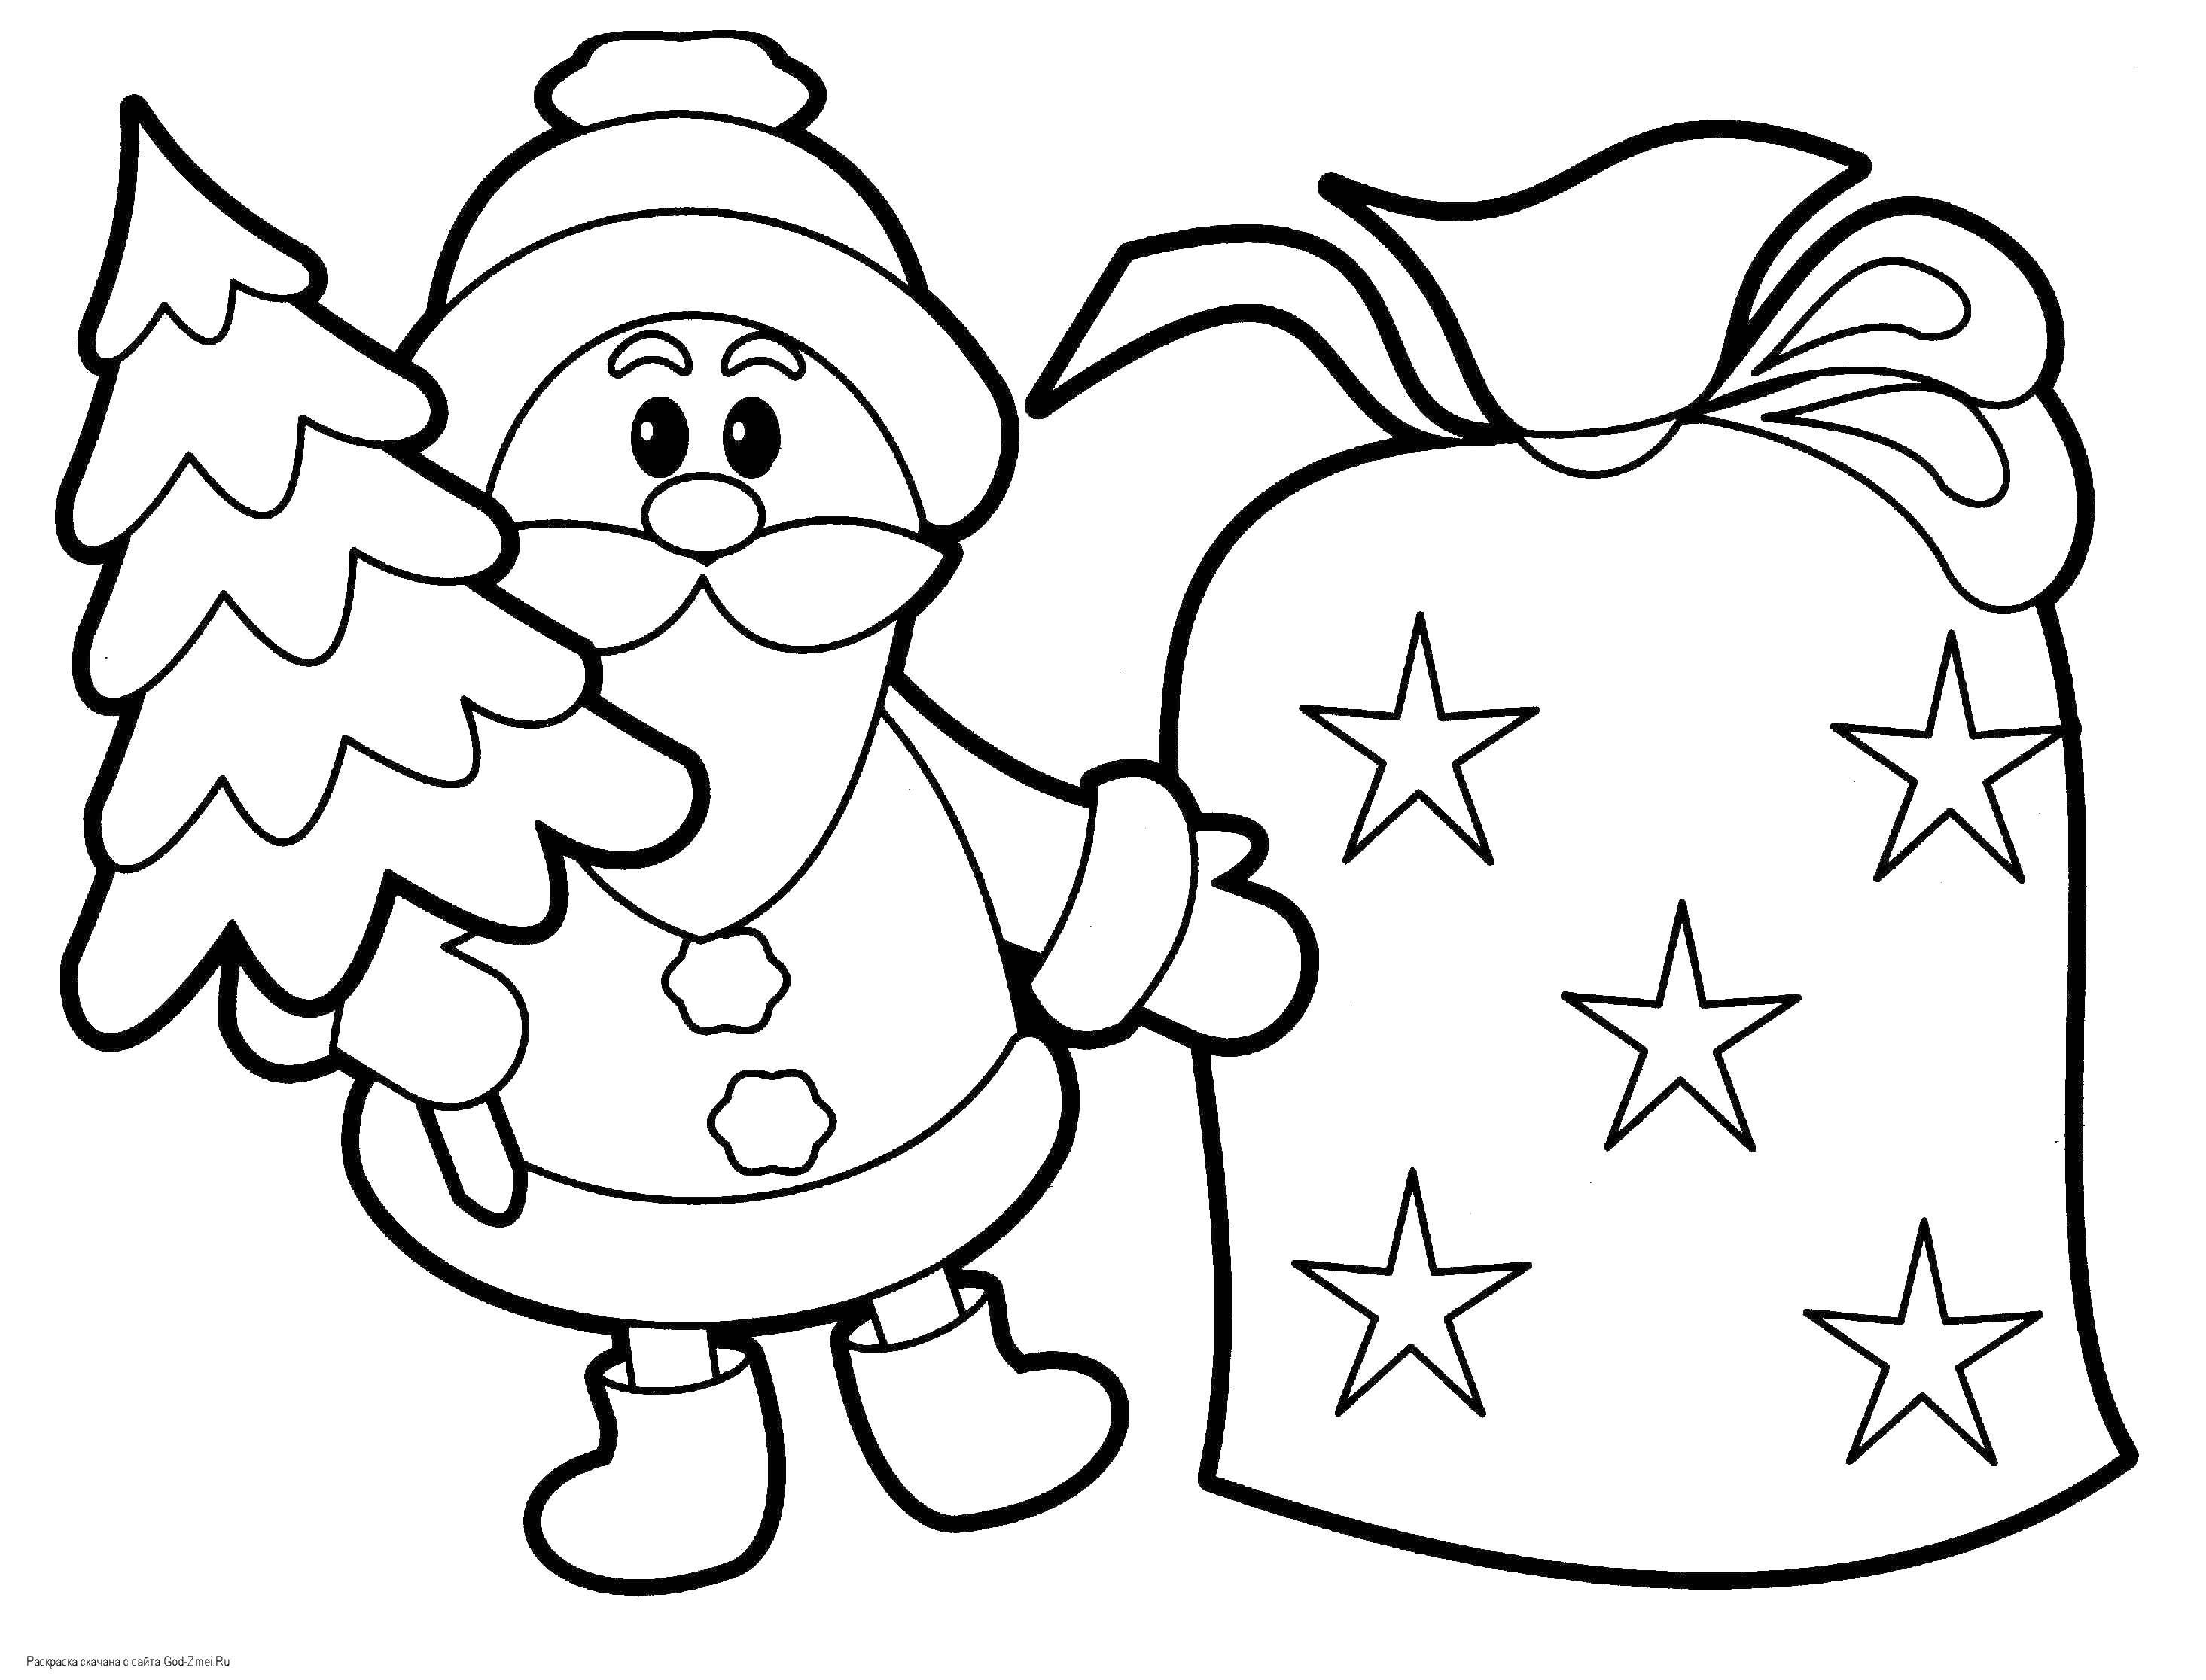 Название: Раскраска Дед мороз с подарками. Категория: новый год. Теги: Новый Год, Дед Мороз, Санта Клаус, подарки.